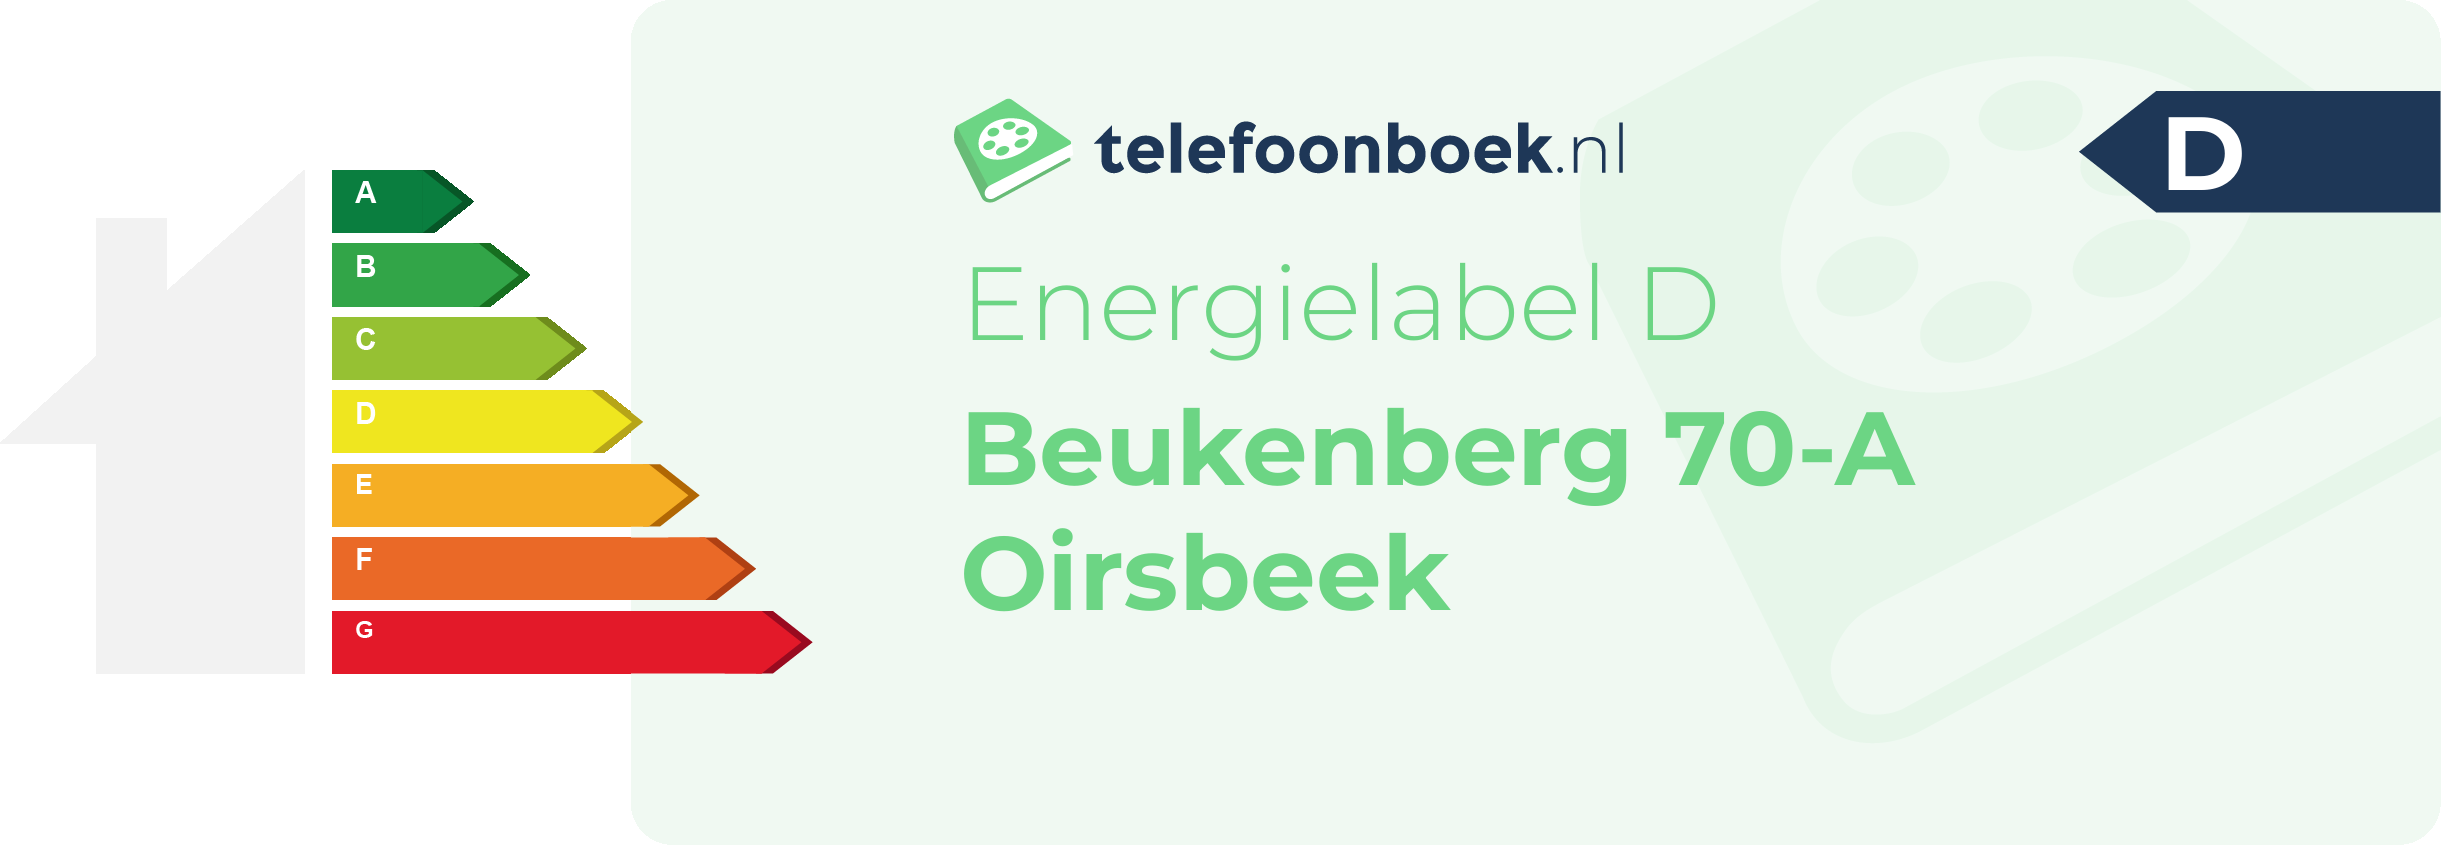 Energielabel Beukenberg 70-A Oirsbeek